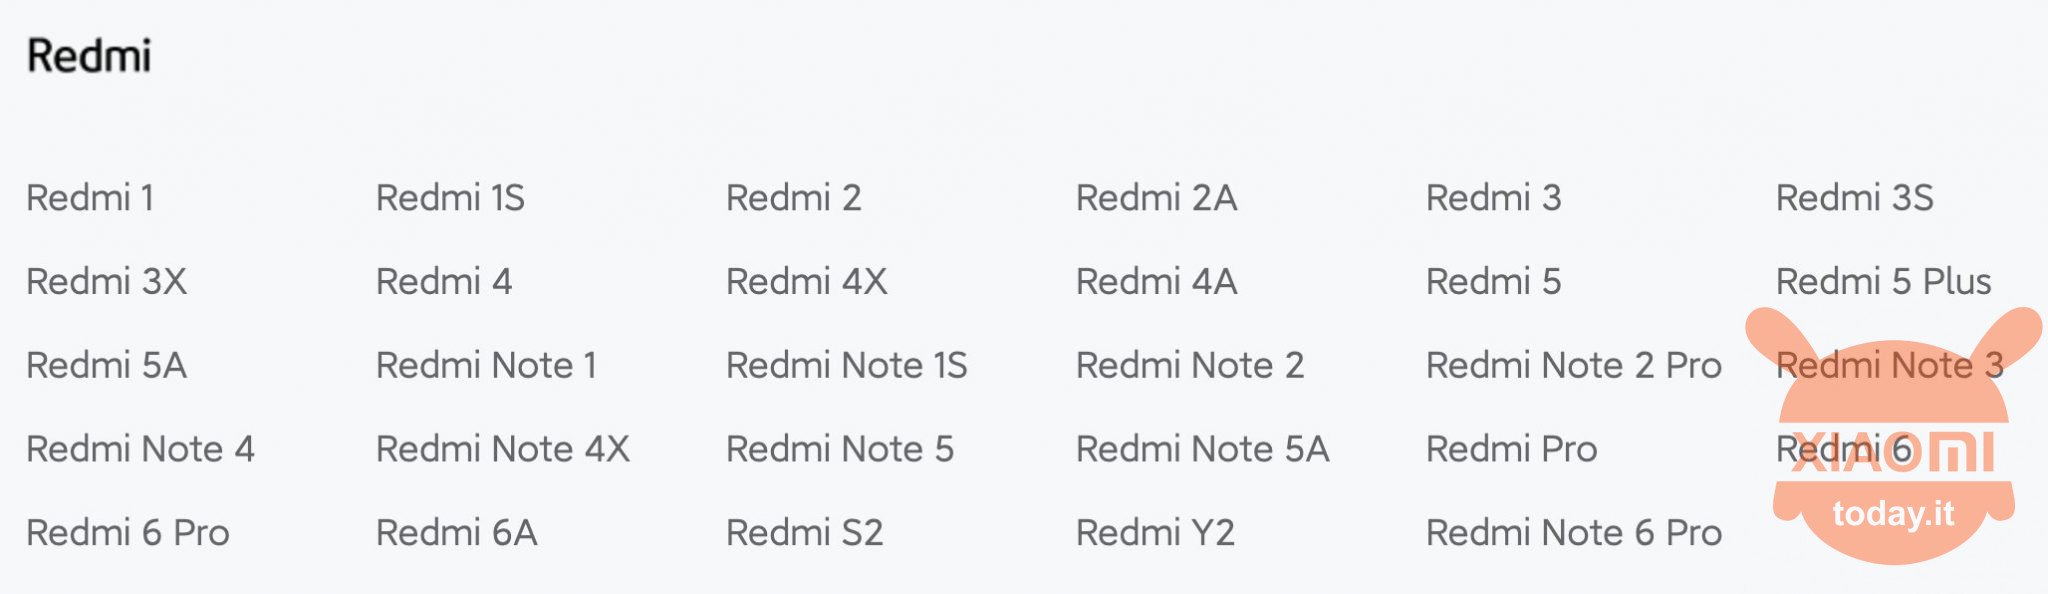 더 이상 miui 및 android를 업데이트하지 않는 redmi 목록